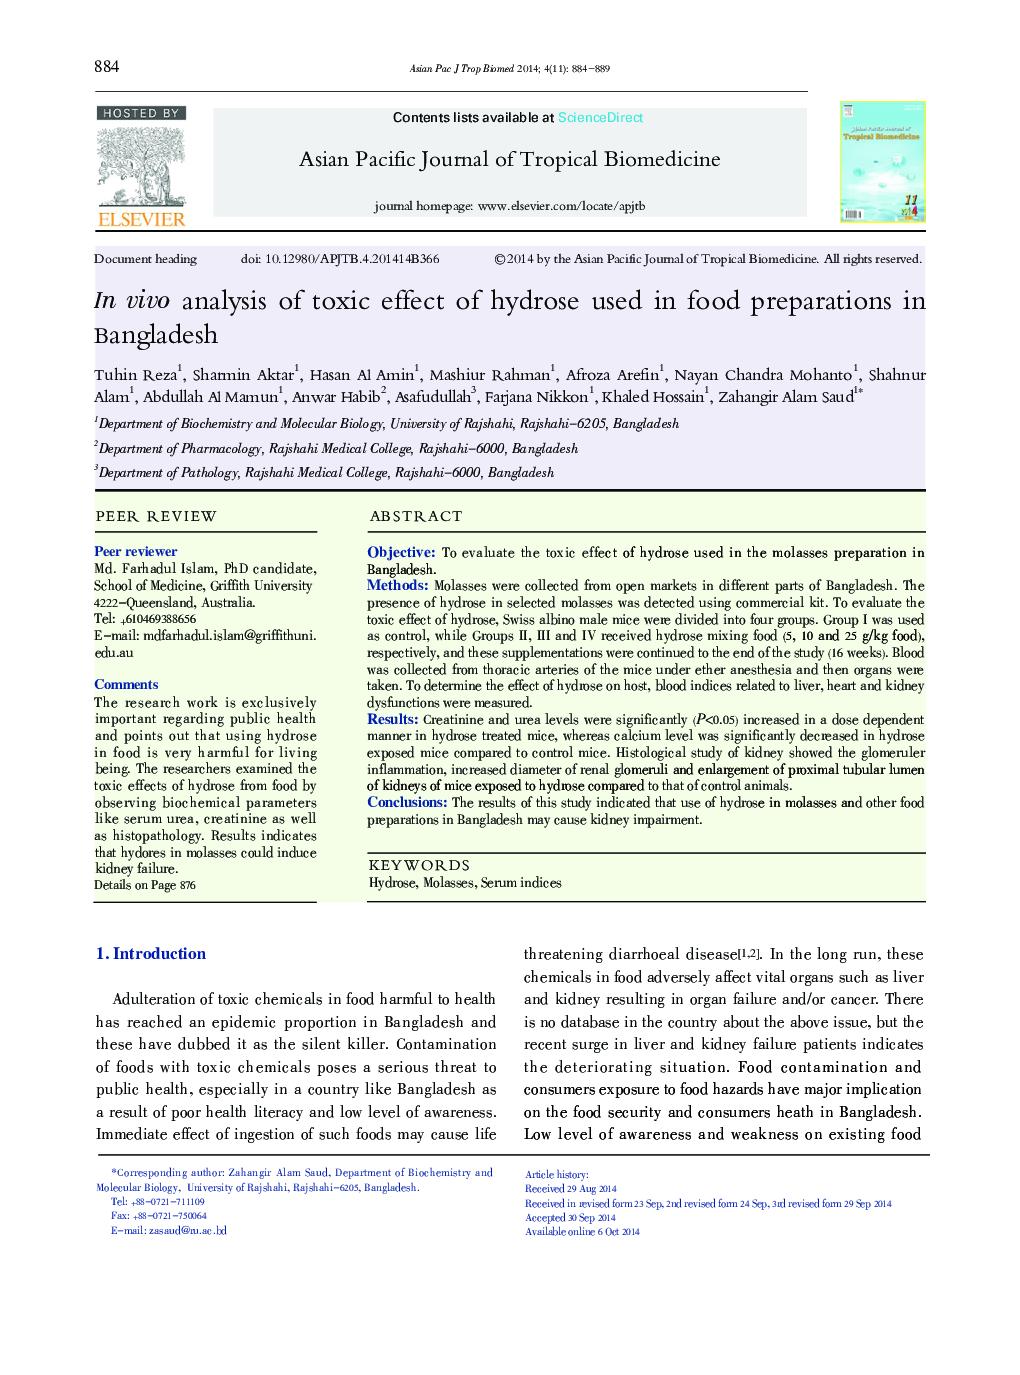 تجزیه و تحلیل در معرض اثر سمی هیدروژن مورد استفاده در تهیه مواد غذایی در بنگلادش 